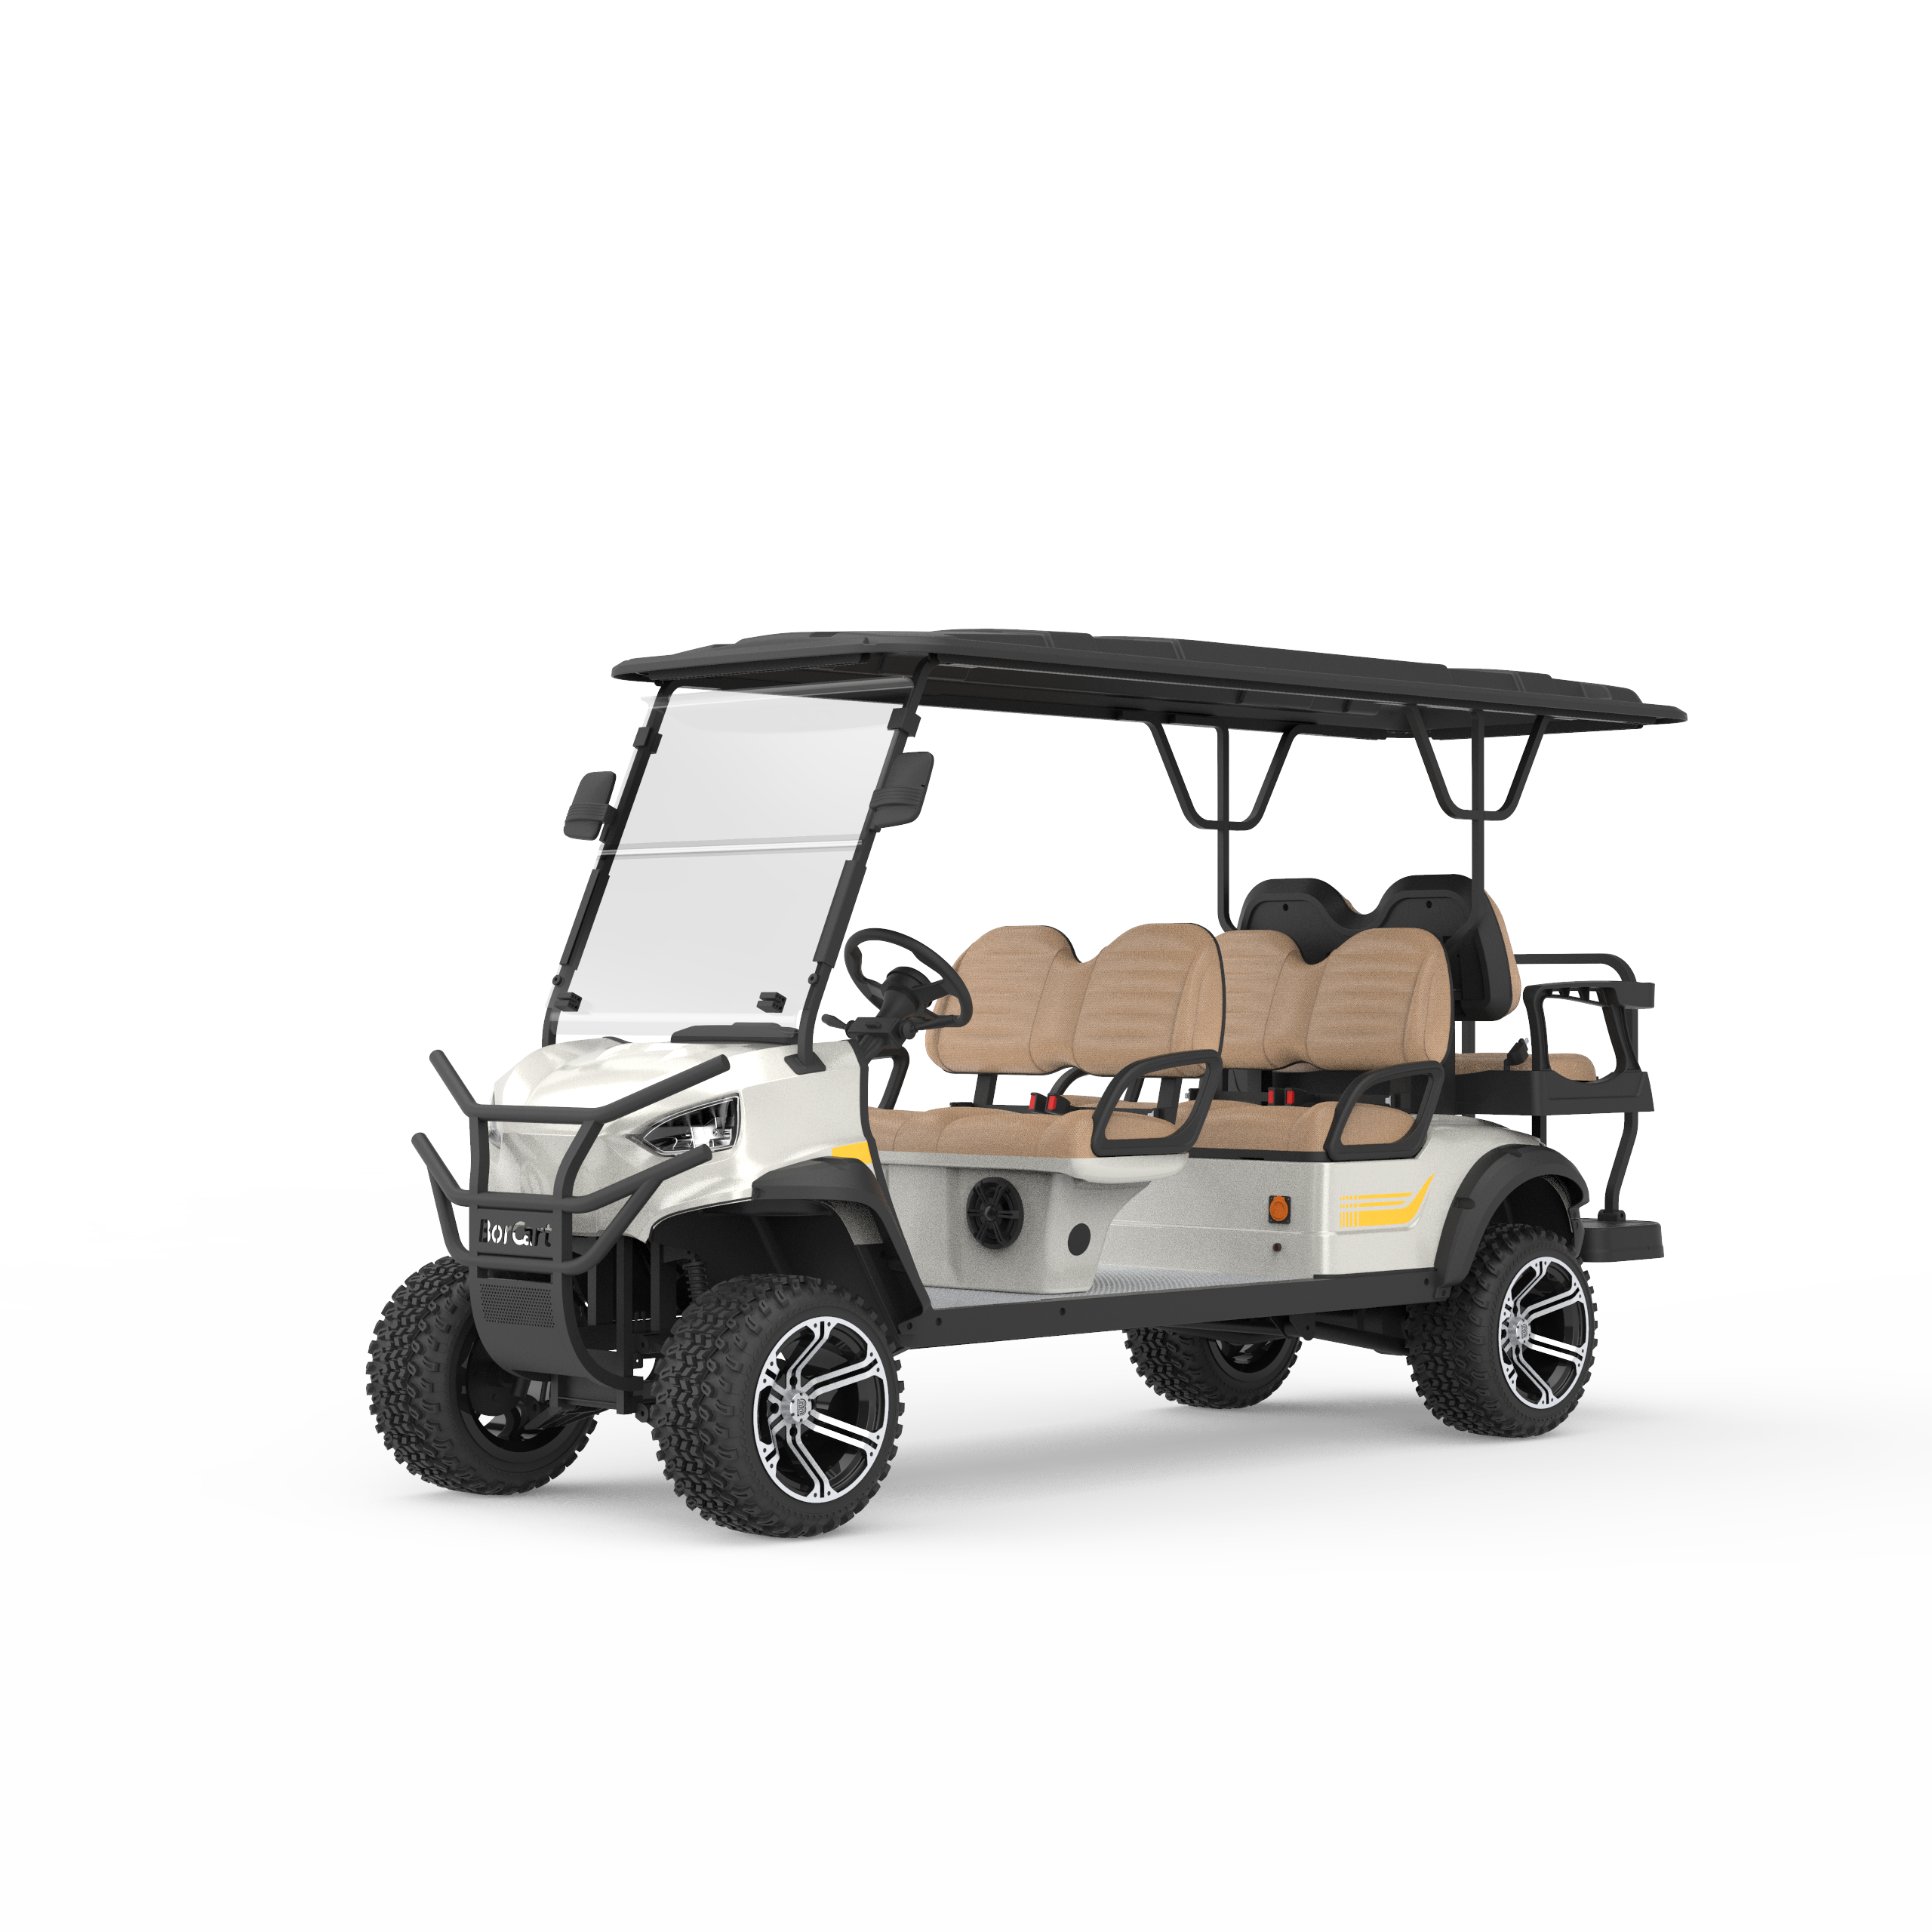 Golf cart and personal cart Manufacturer in China - Borcart – Borcart Golf  Cart